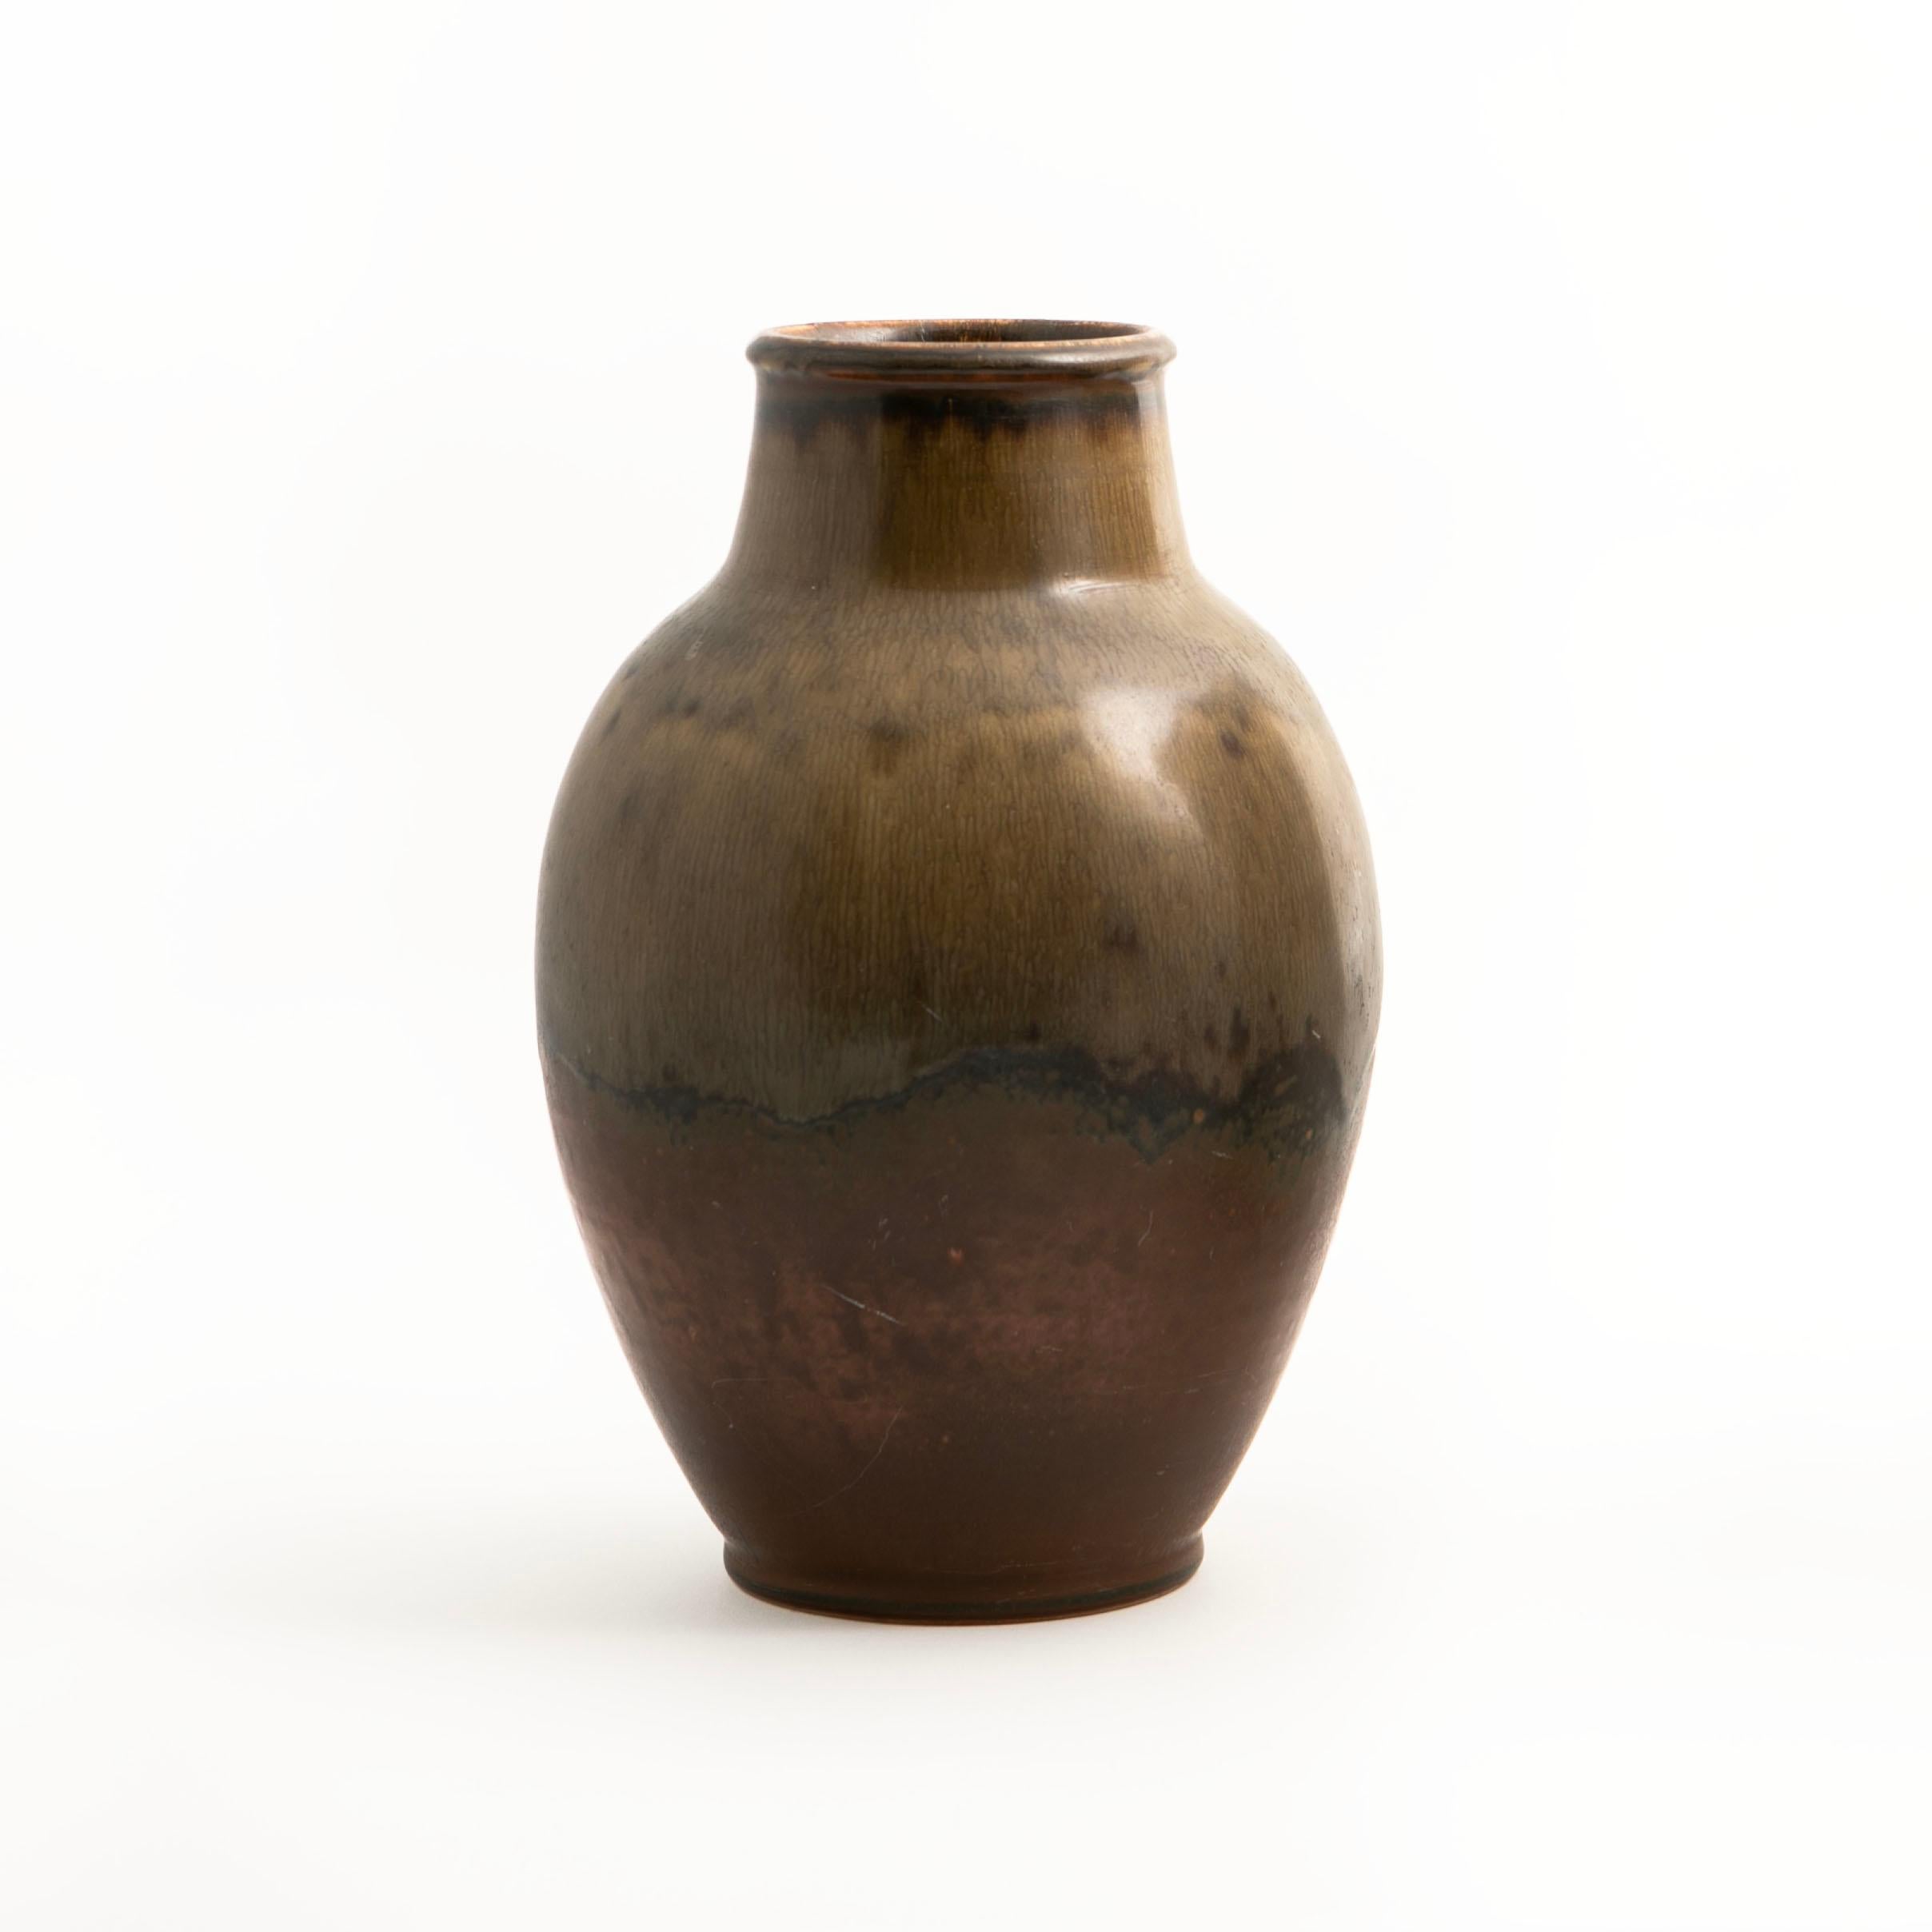 Ebbe Sadolin, Dänin 1900-1982

Vase von Ebbe Sadolin für Bing & Grøndal. Höhe: 29 cm.
Steingut mit einer unglaublich schönen Glasur in Erdtönen.

Die Vase hat eine kleine Reparatur am Hals, die so gekonnt ausgeführt wurde, dass sie kaum